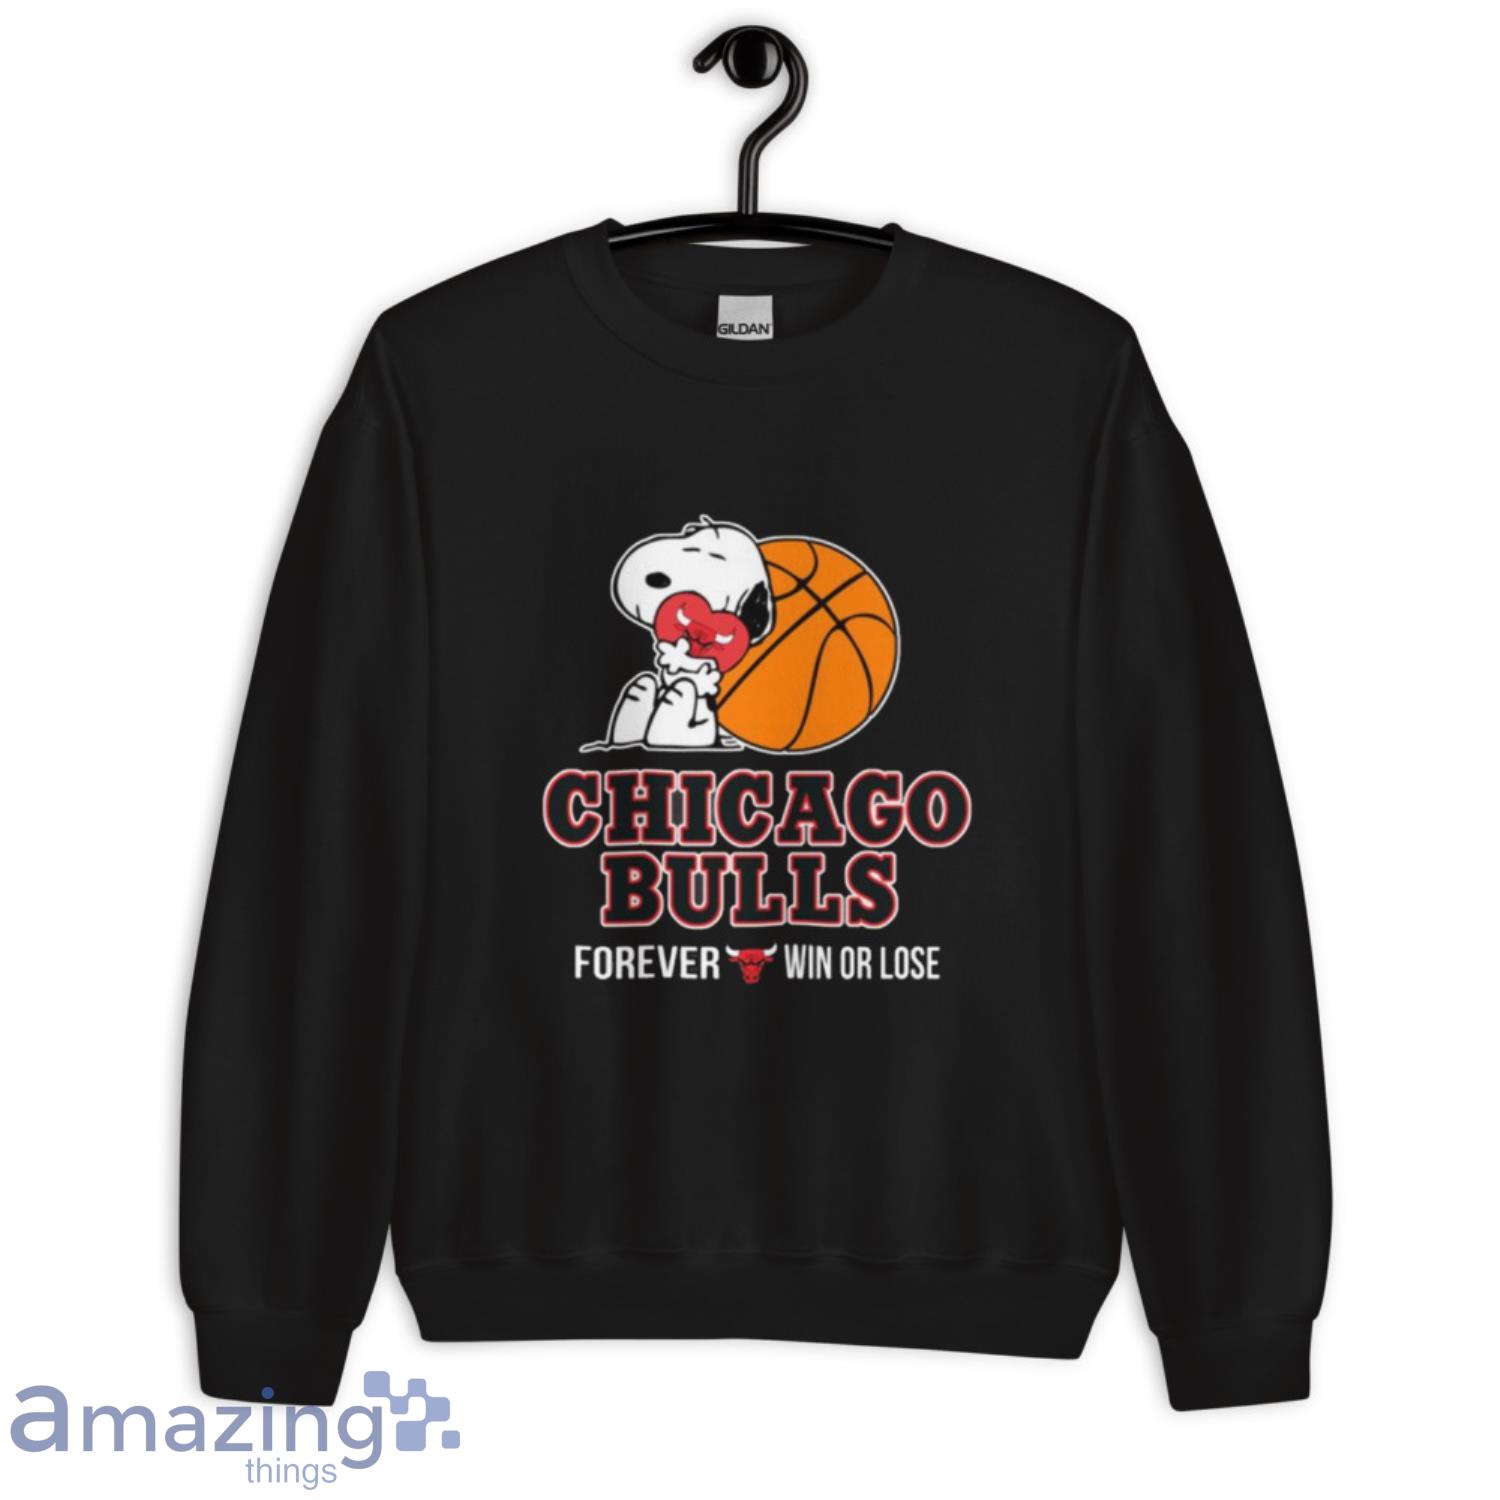 Chicago Bulls NBA Basketball T-shirt Size 5XL 